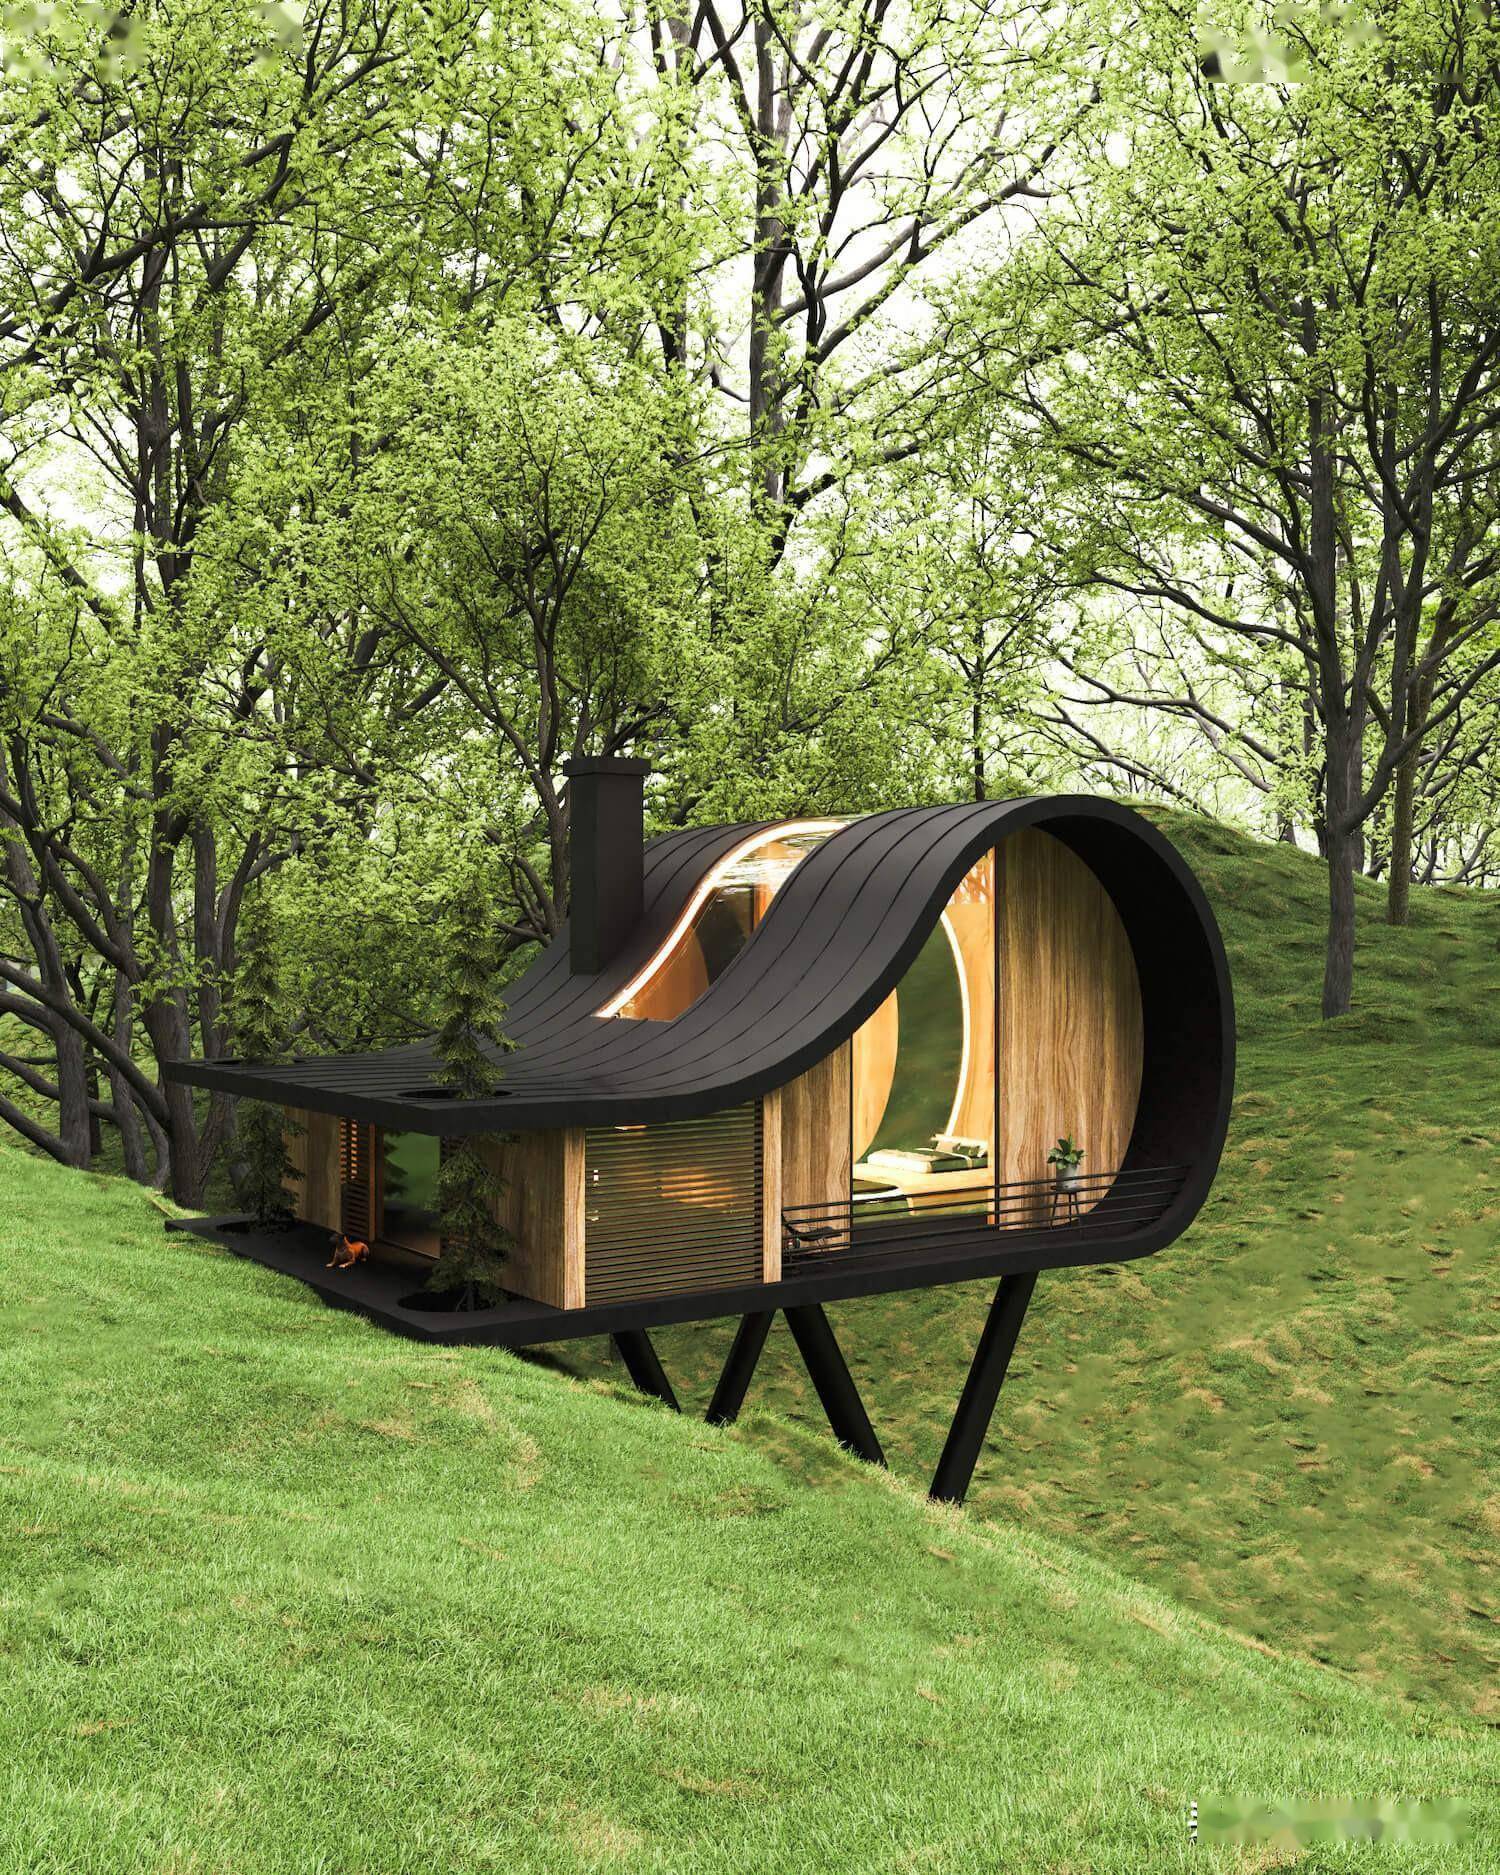 可以观天看地的斜坡树屋小木屋:度假酒店民宿设计可以来一套